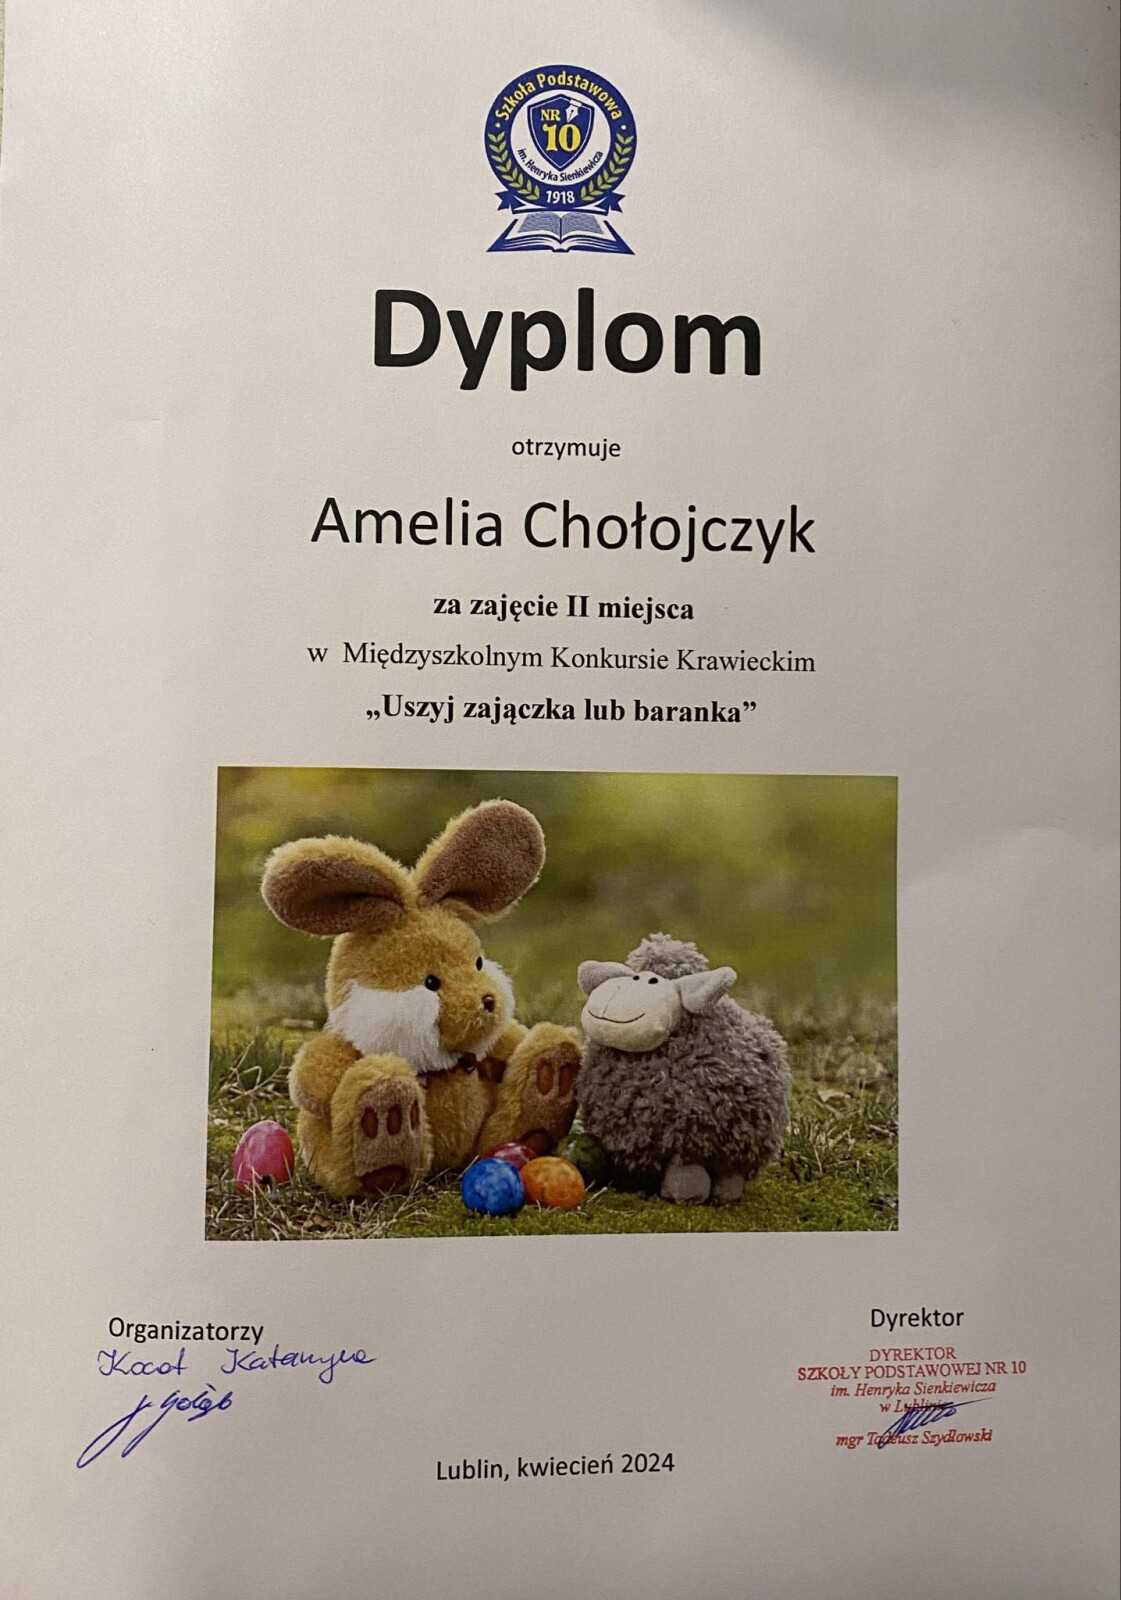 Amelia Chołojczyk - dyplom